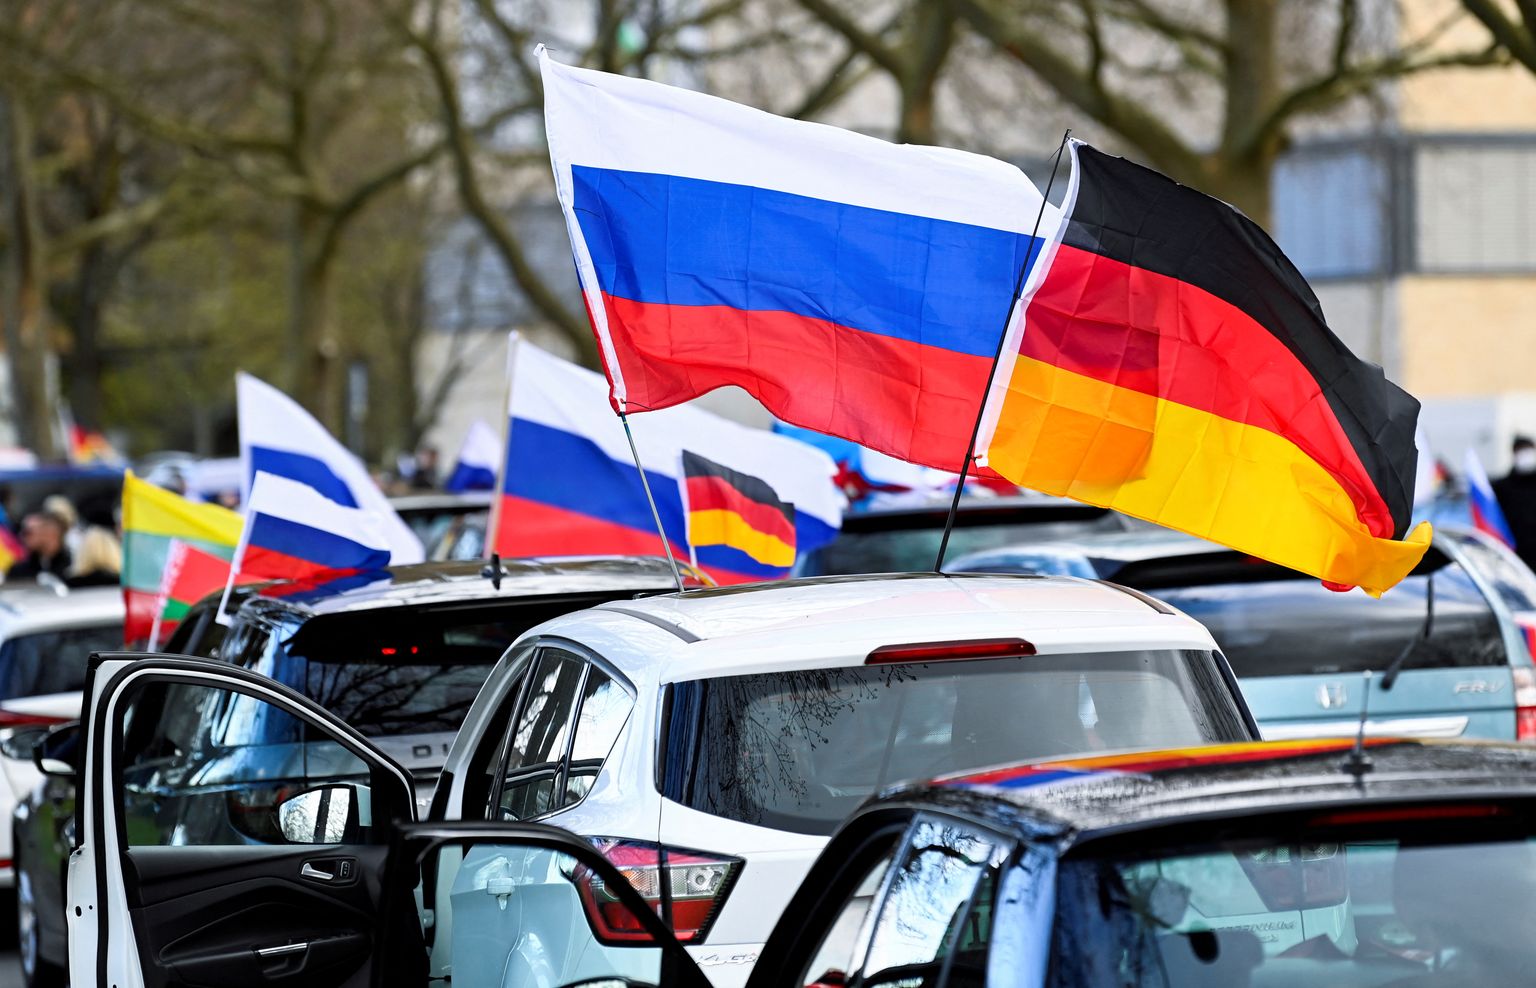 Venemaa toetajate protest koos Vene lippudega 10. aprillil 2022 Saksamaal Hannoveris. Näha on ka Saksa lippe